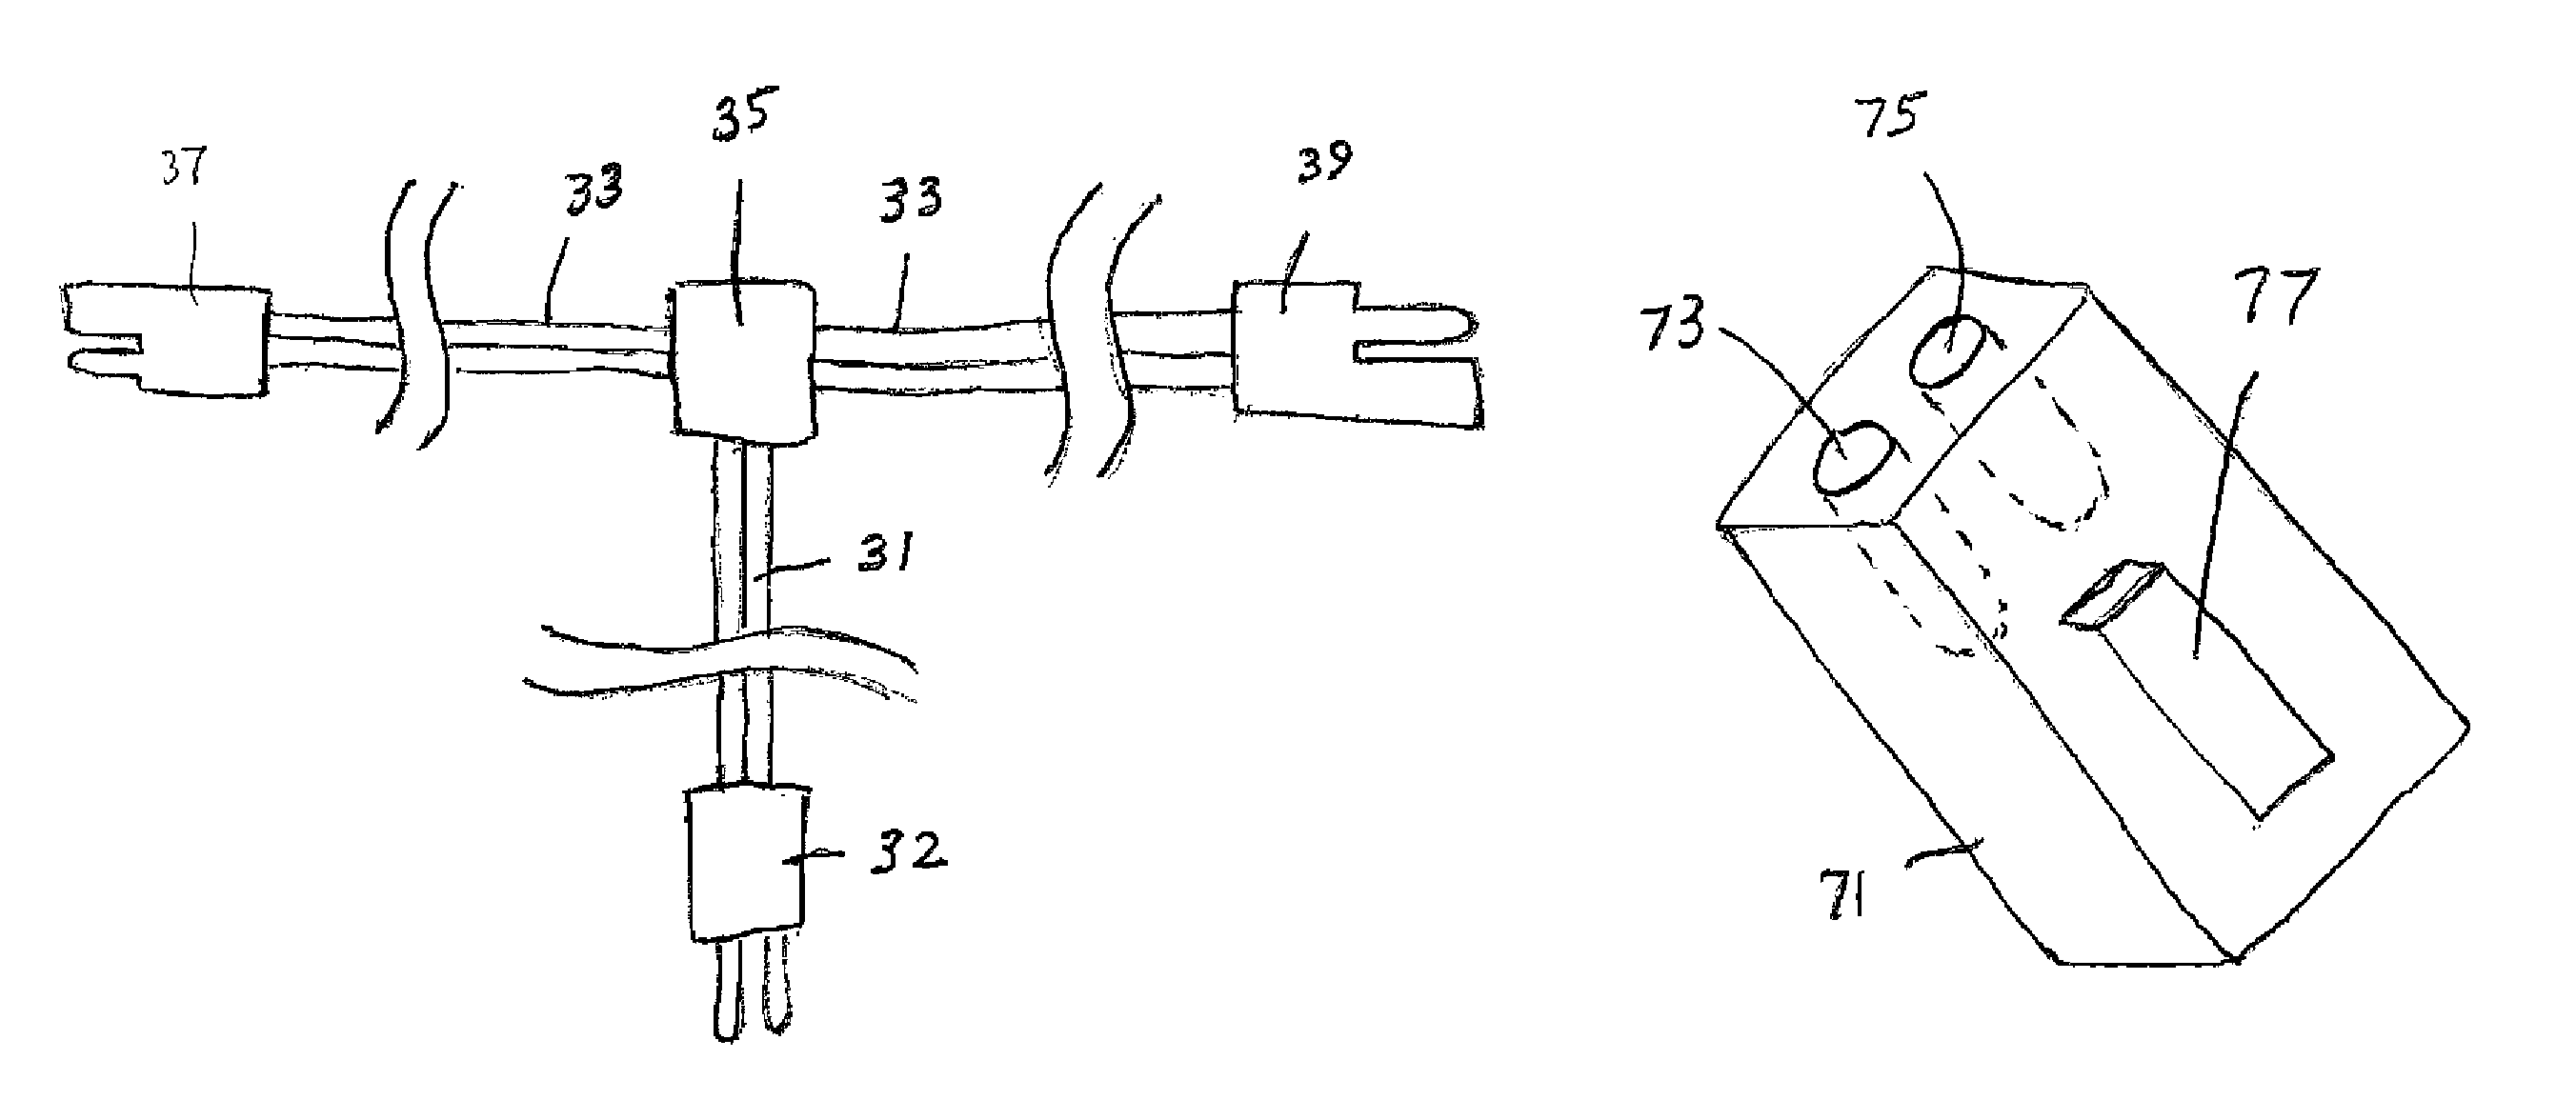 Wiring harness having interchangeable connectors